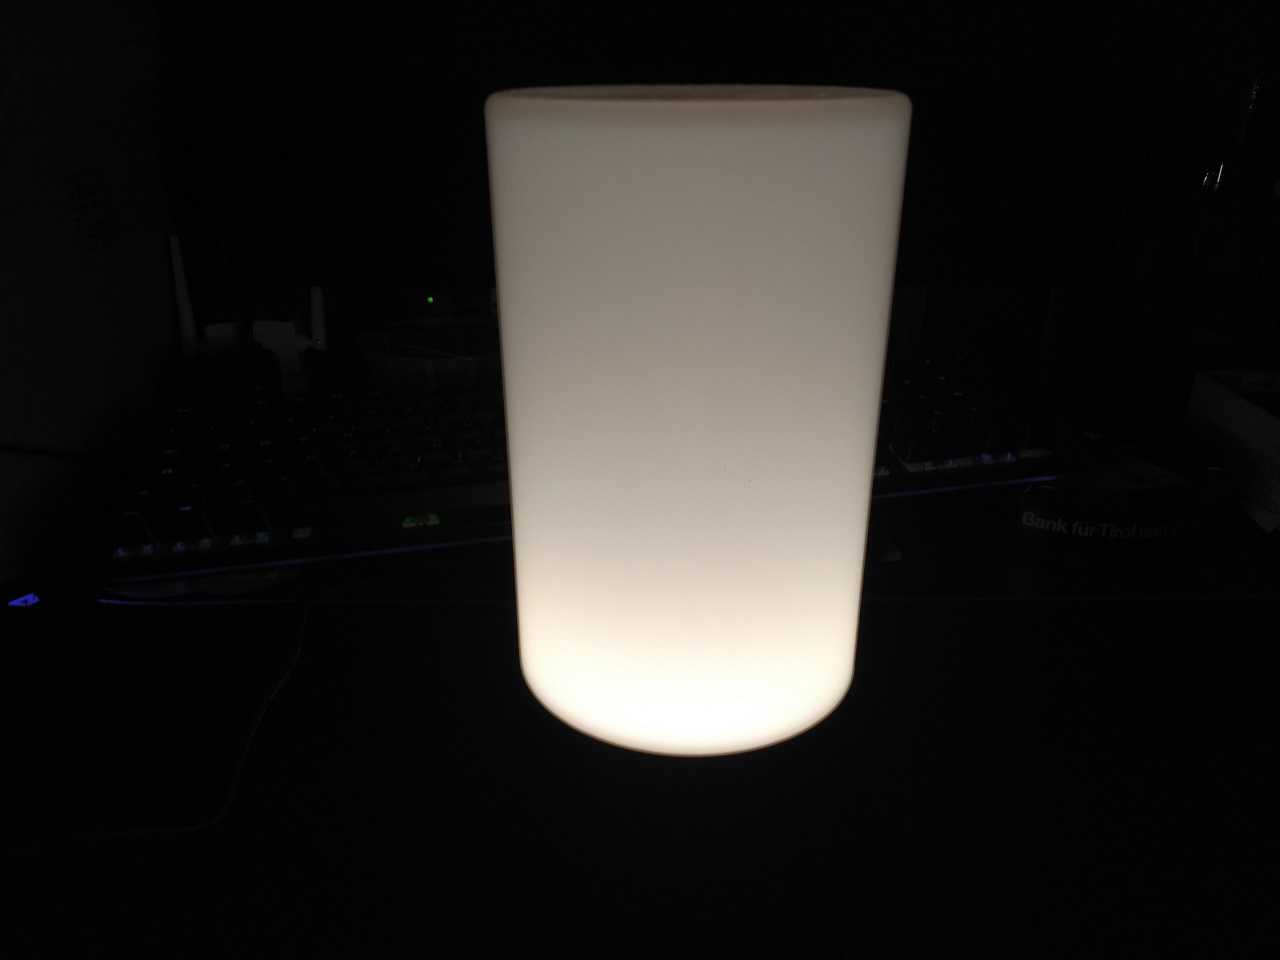 Recensione AUKEY LT-T6: la lampada notturna elegante e colorata